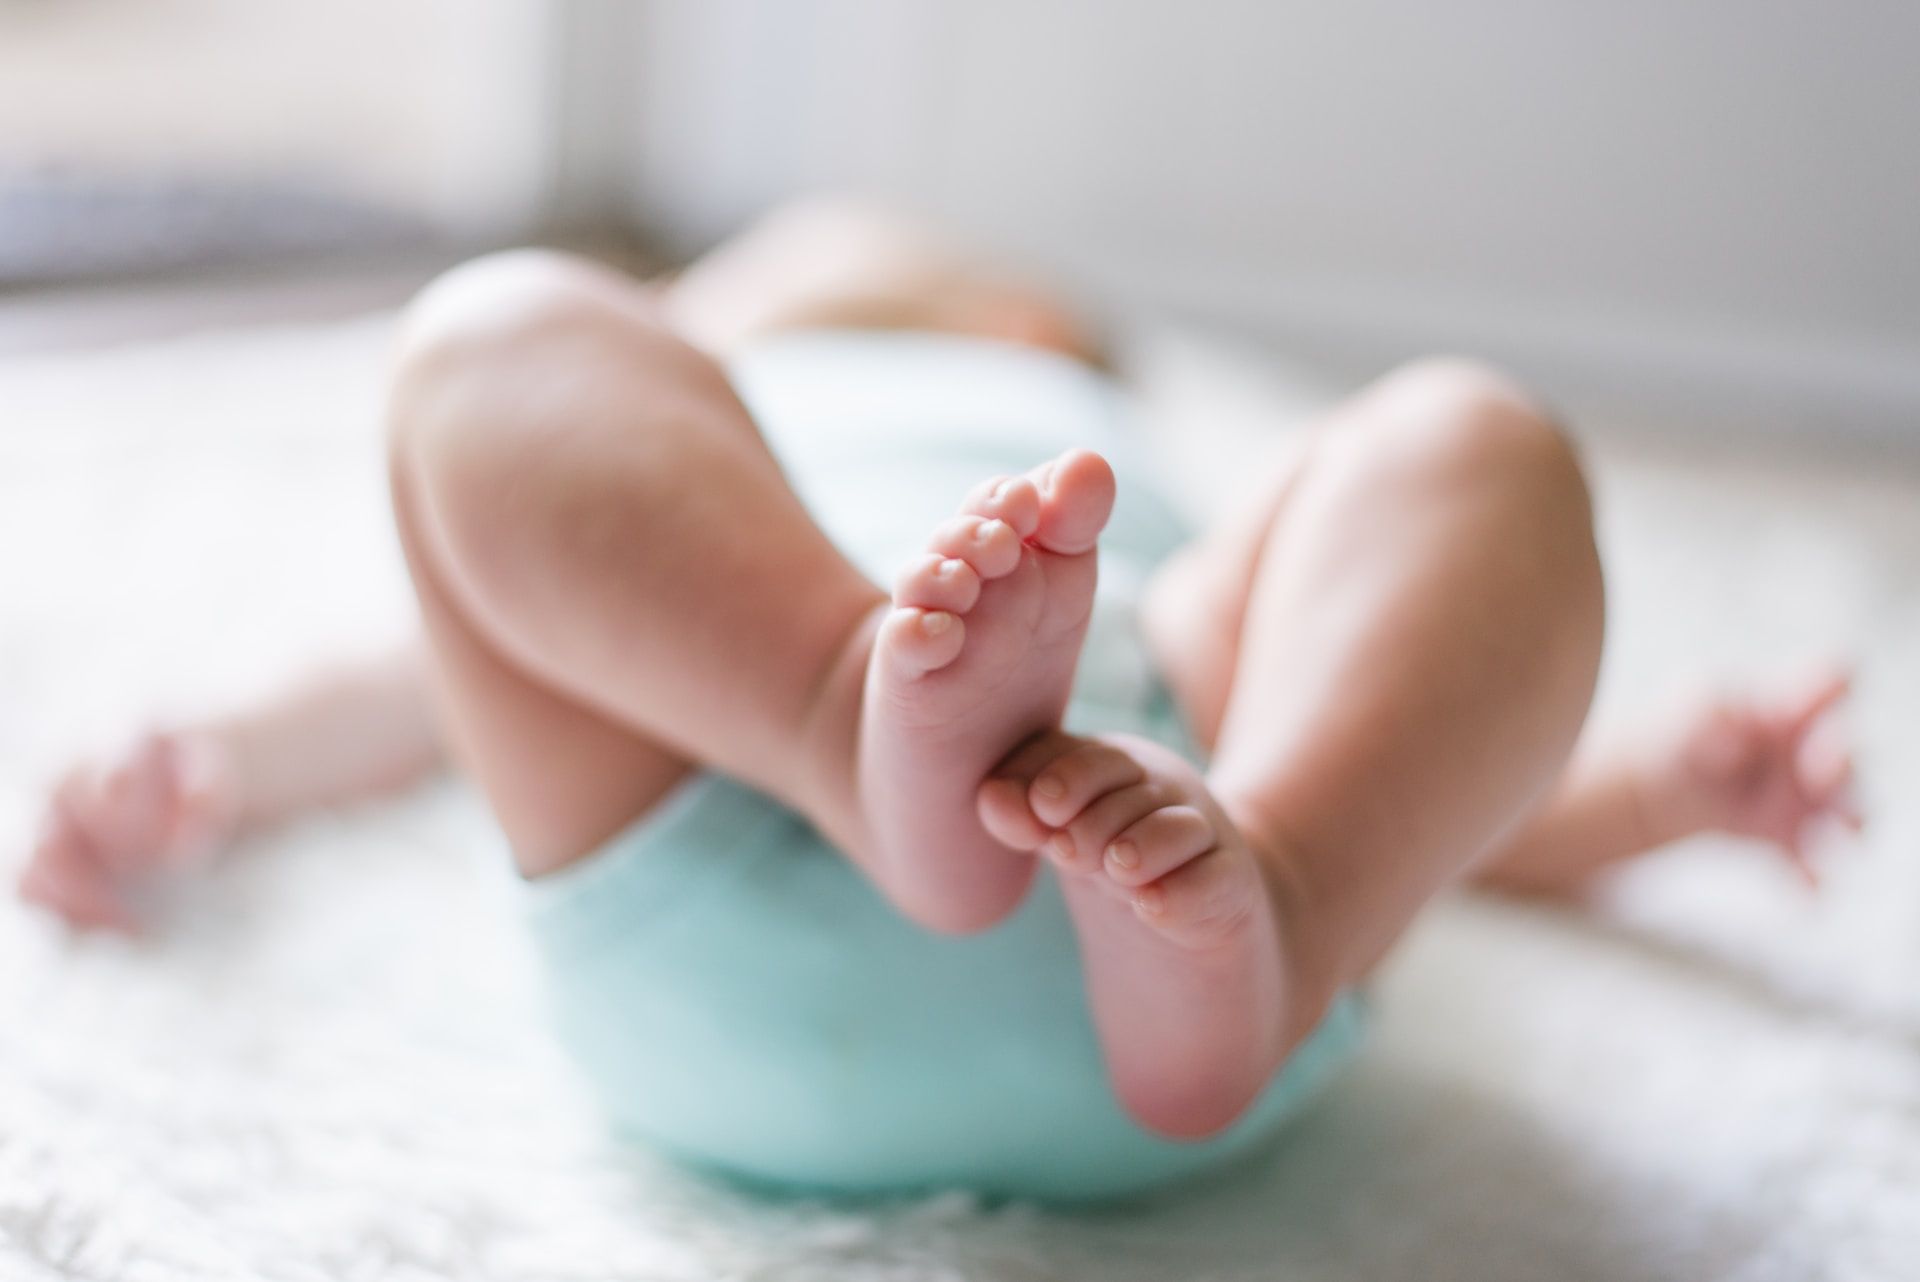 bébé vu par les pieds - Photo by Picsea on https://unsplash.com/fr/photos/bebe-allonge-sur-le-lit-kd3qRzgEl70